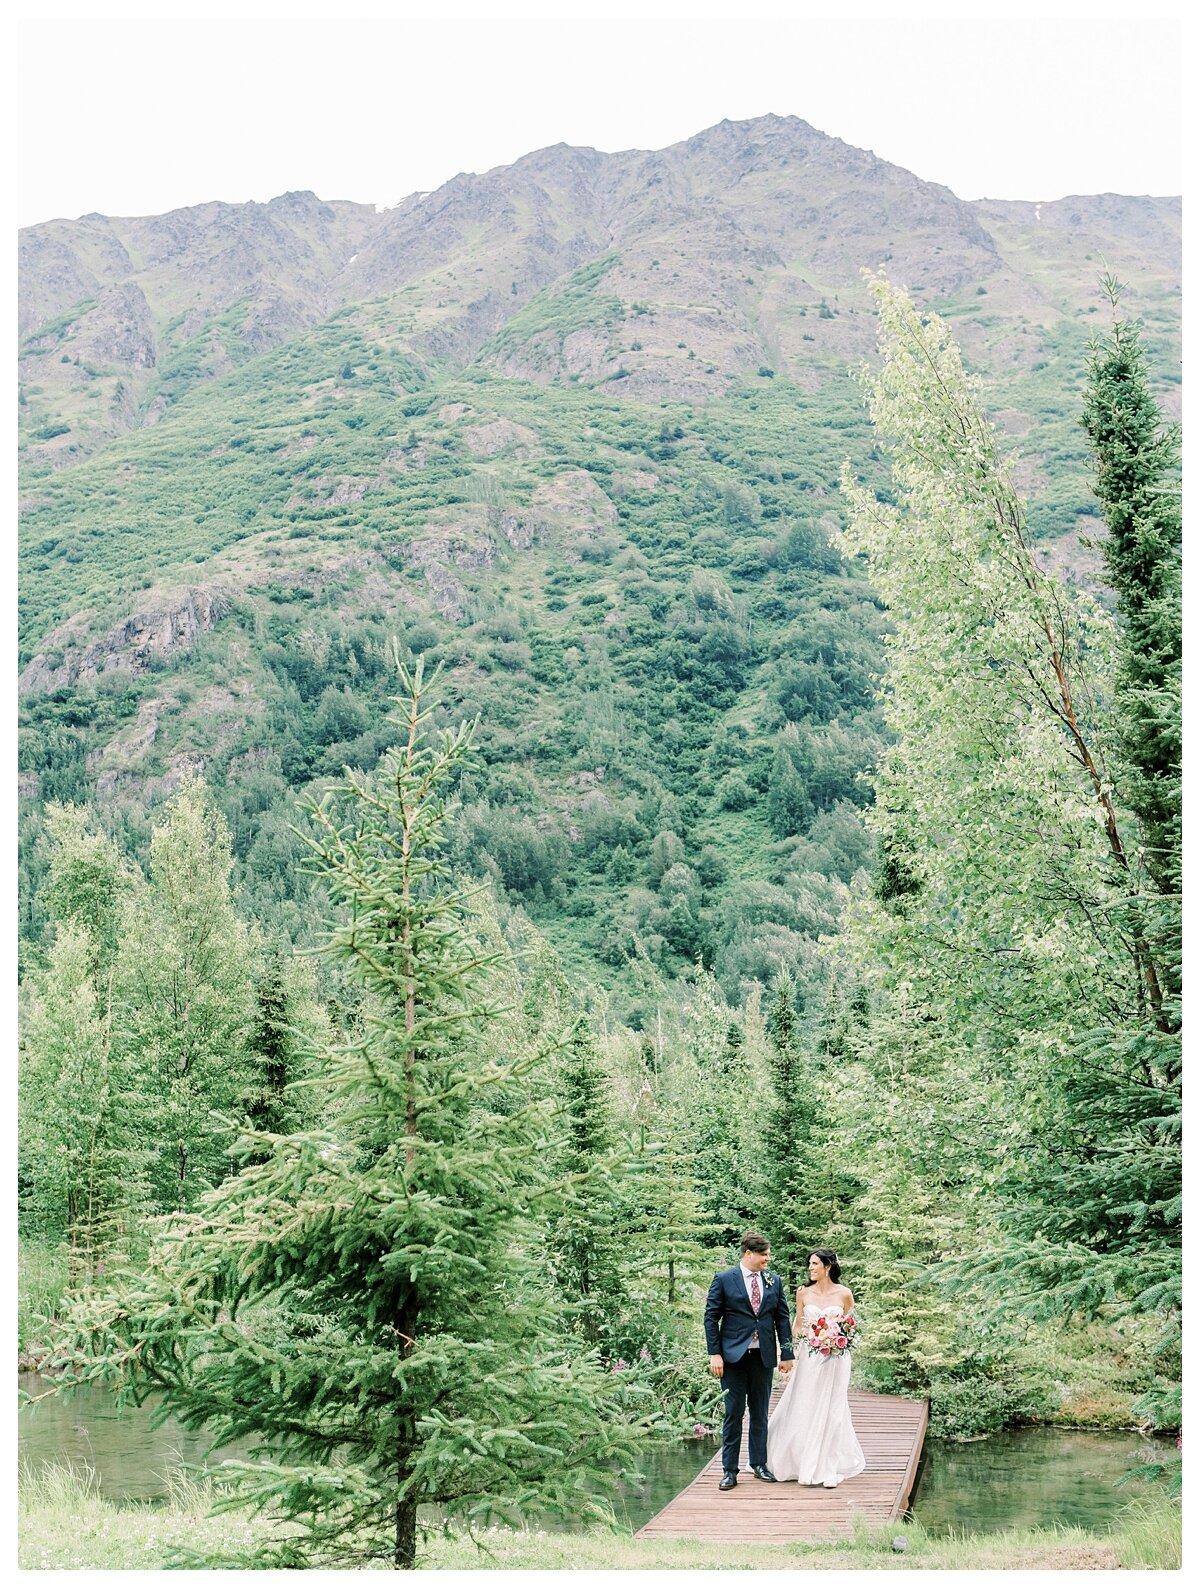 Destination-Wedding-Photographer-Alaska_0019.jpg